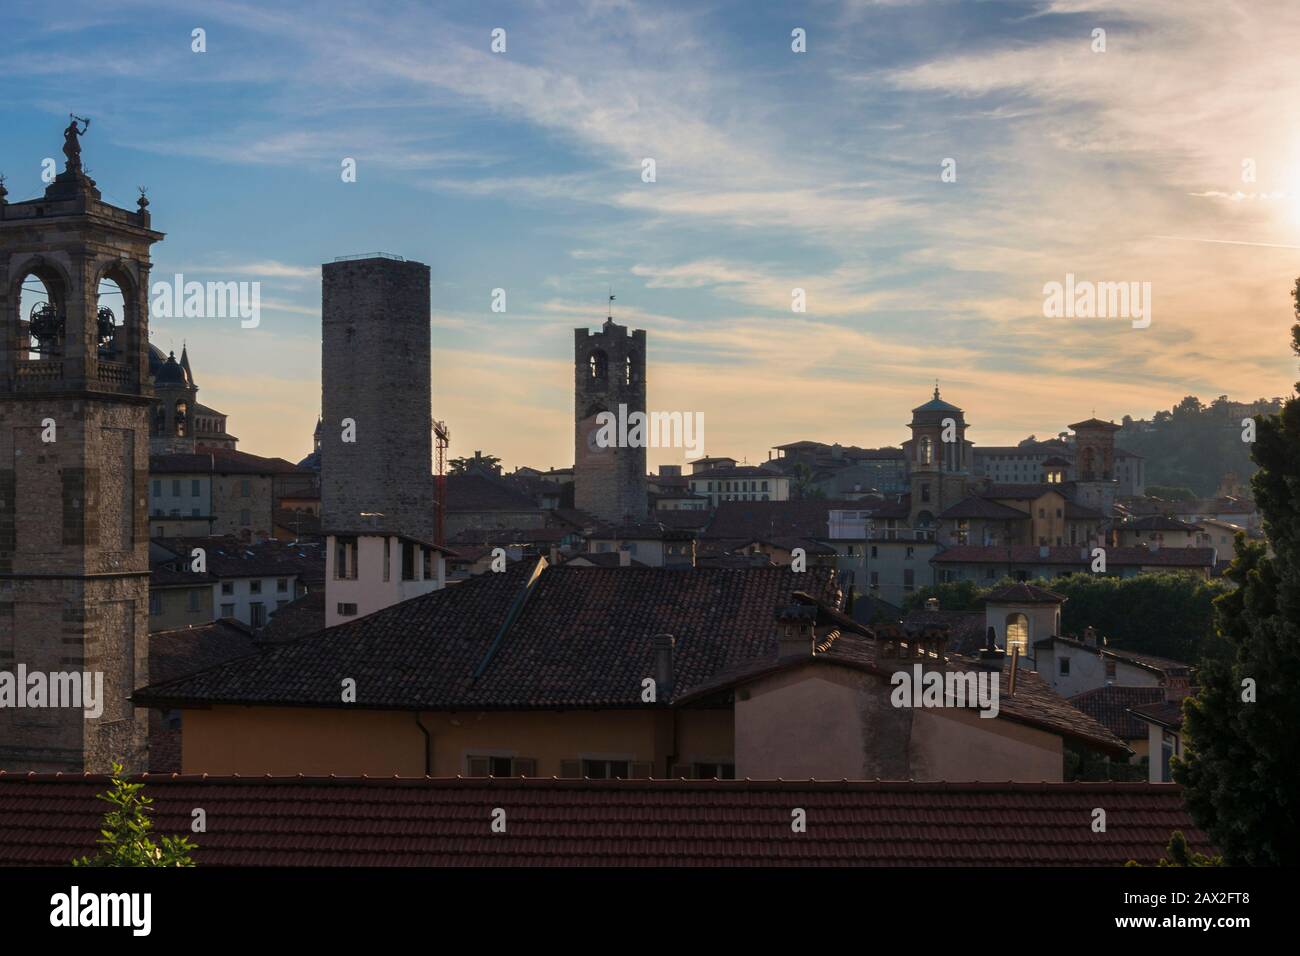 Bergamo Dächer durch Frühling Abendhimmel hintergrundiert. Top Dächer und historische Türme Landschaft hoto des mittelalterlichen Stadtzentrums in der Lombardei Region Italien. Stockfoto